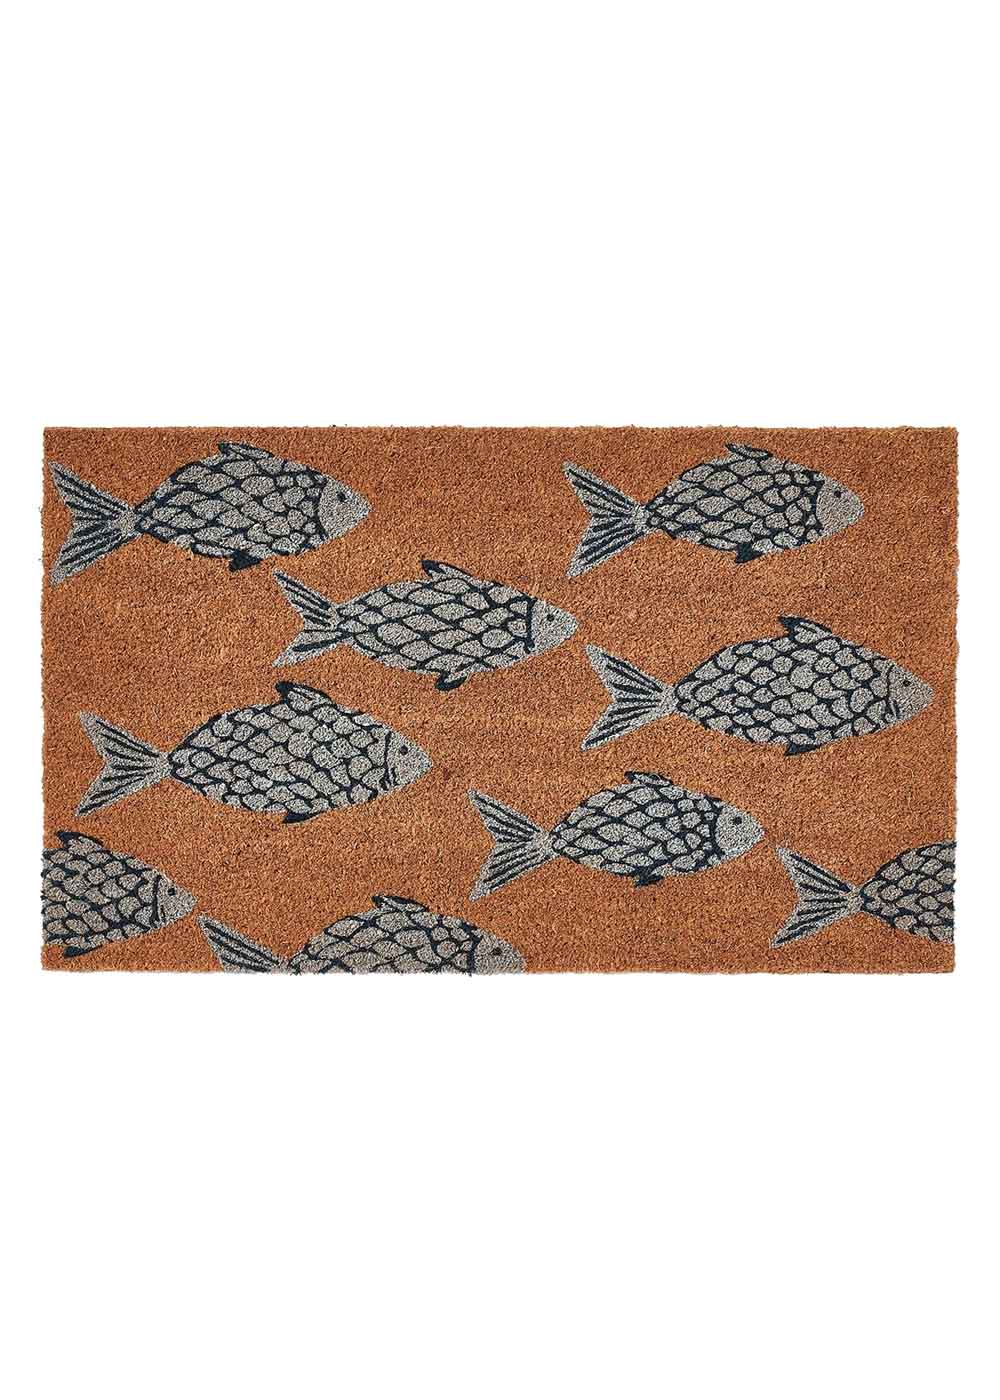 PVC Backed Coir Doormat - School of Fish